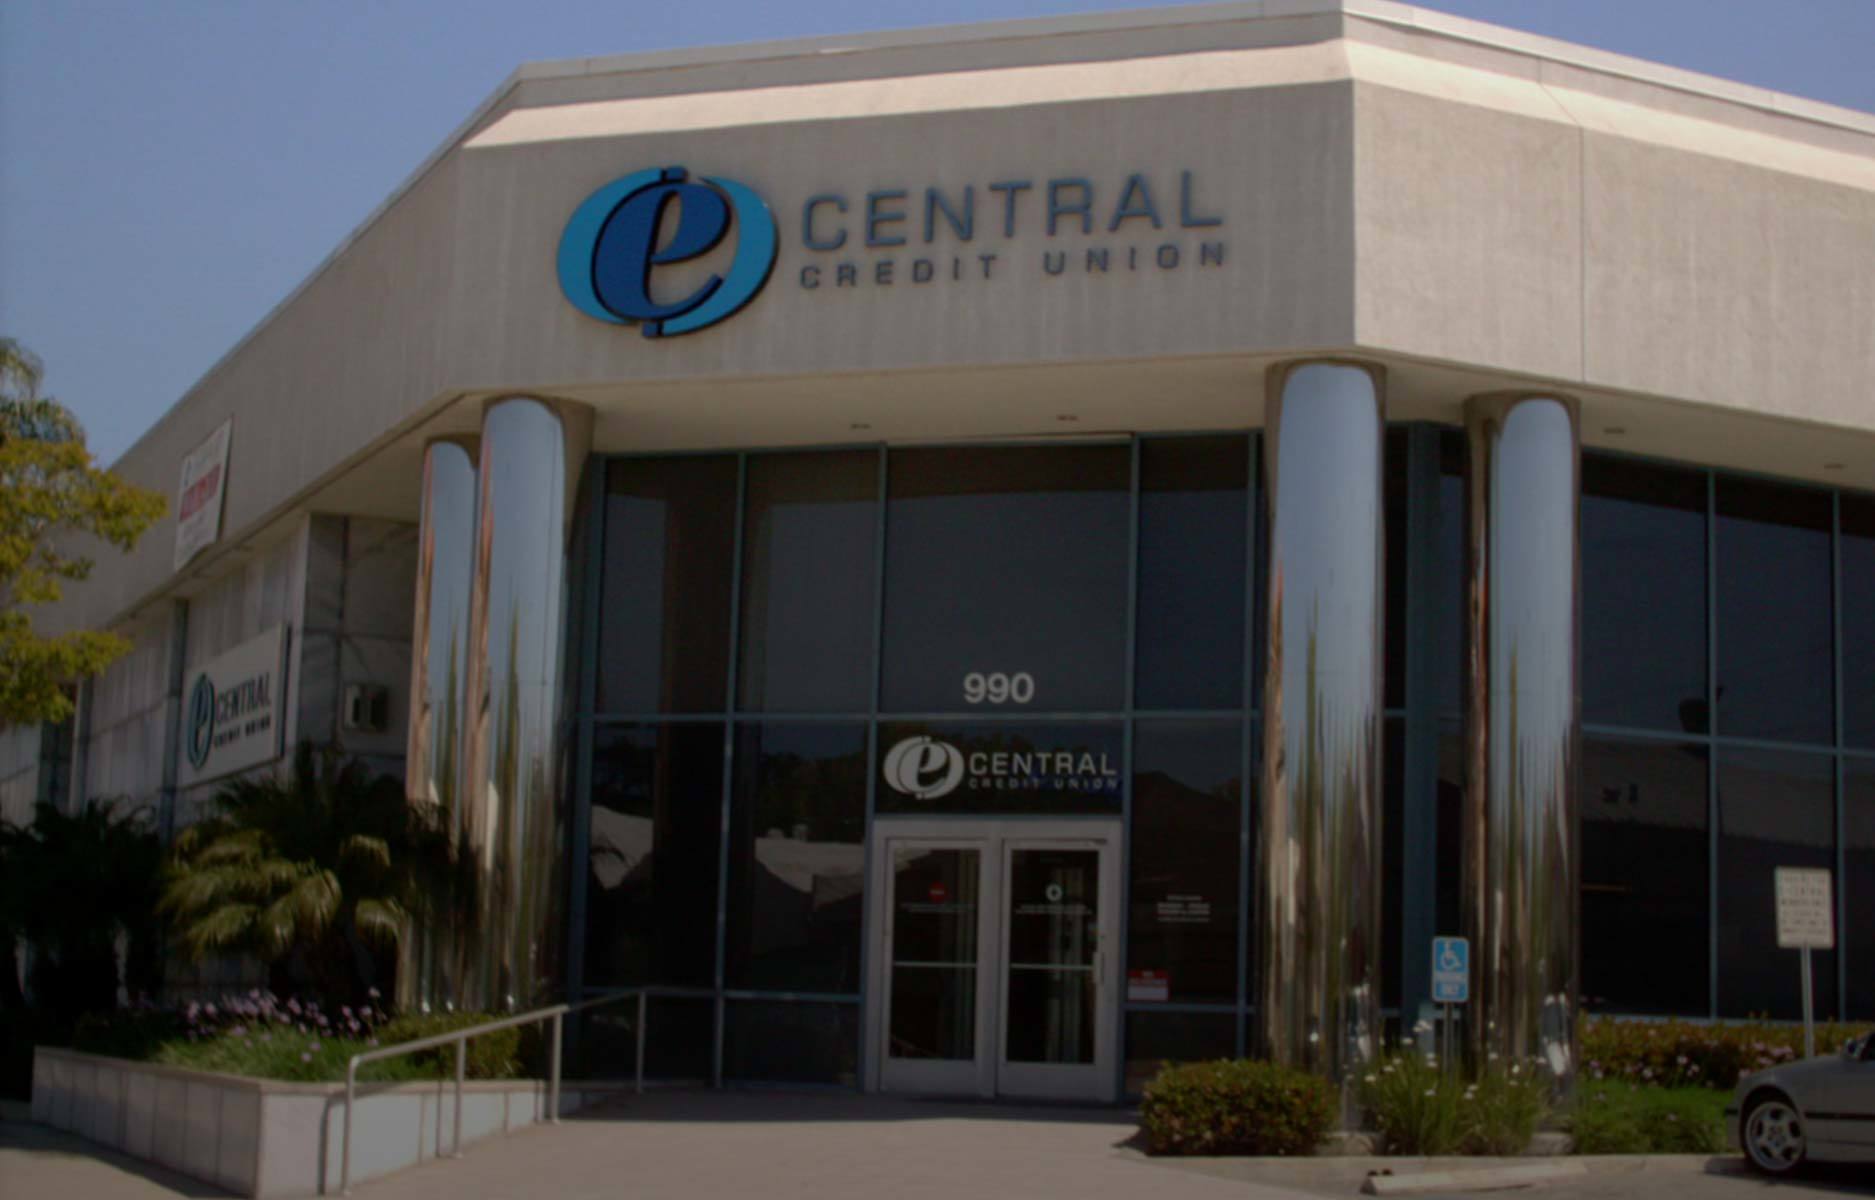 E-Central Credit Union